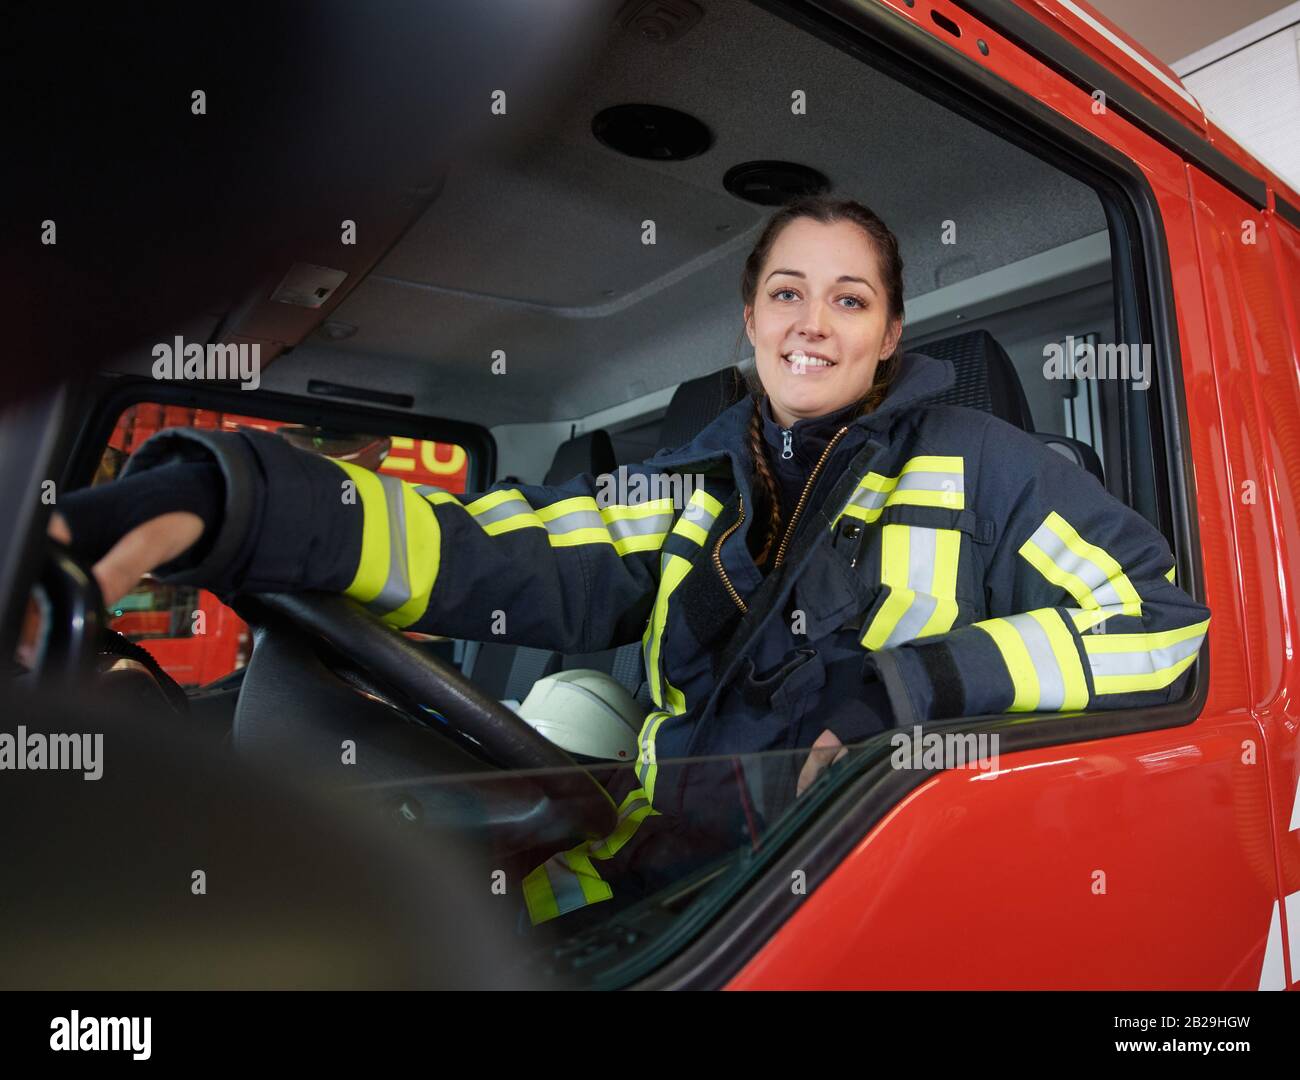 Bochum, Allemagne. 19 février 2020. Le pompier Jasmin (29 ans) est assis au  volant d'un moteur incendie. Les femmes sont l'exception dans les pompiers  professionnels en Allemagne. Selon les derniers chiffres de